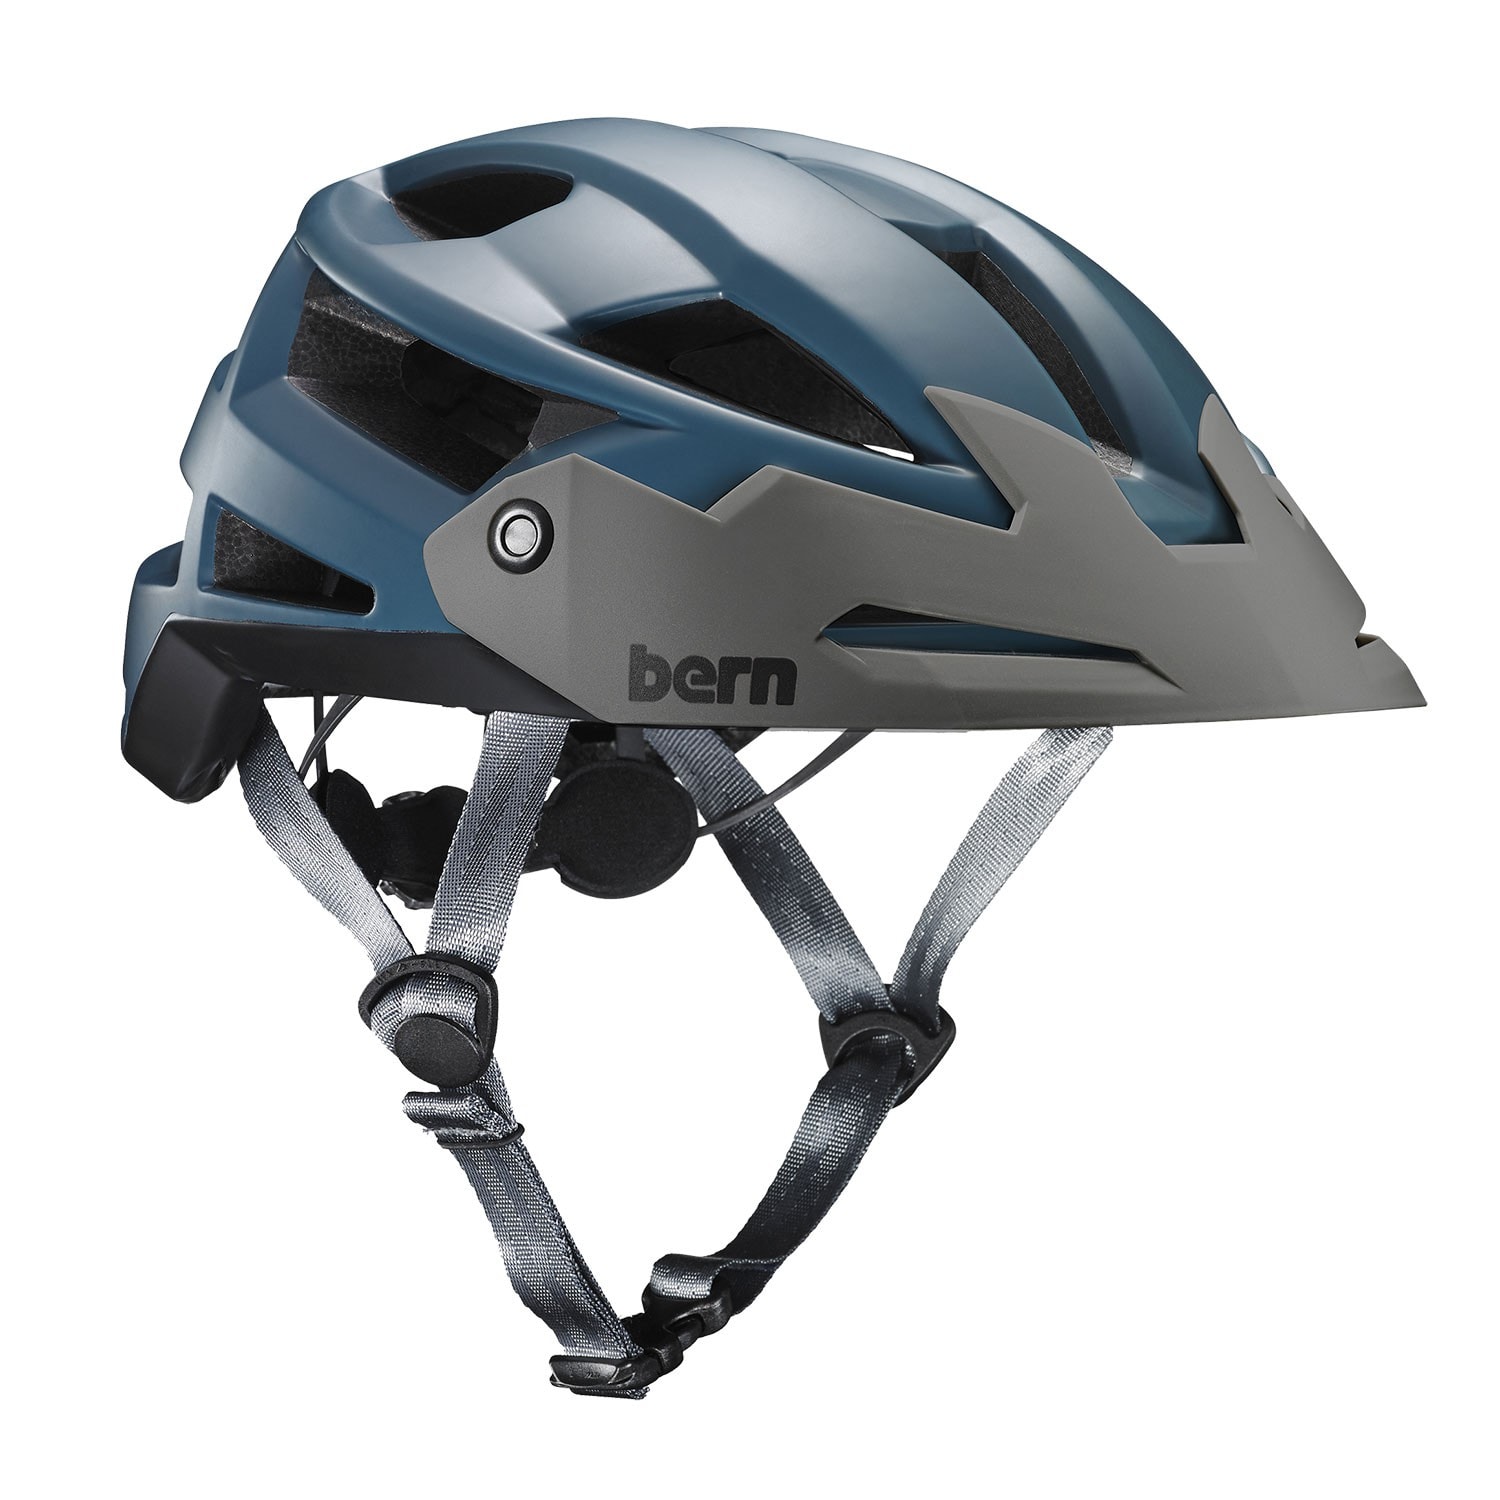 Bike Helmet Bern Fl-1 Trail satin muted teal